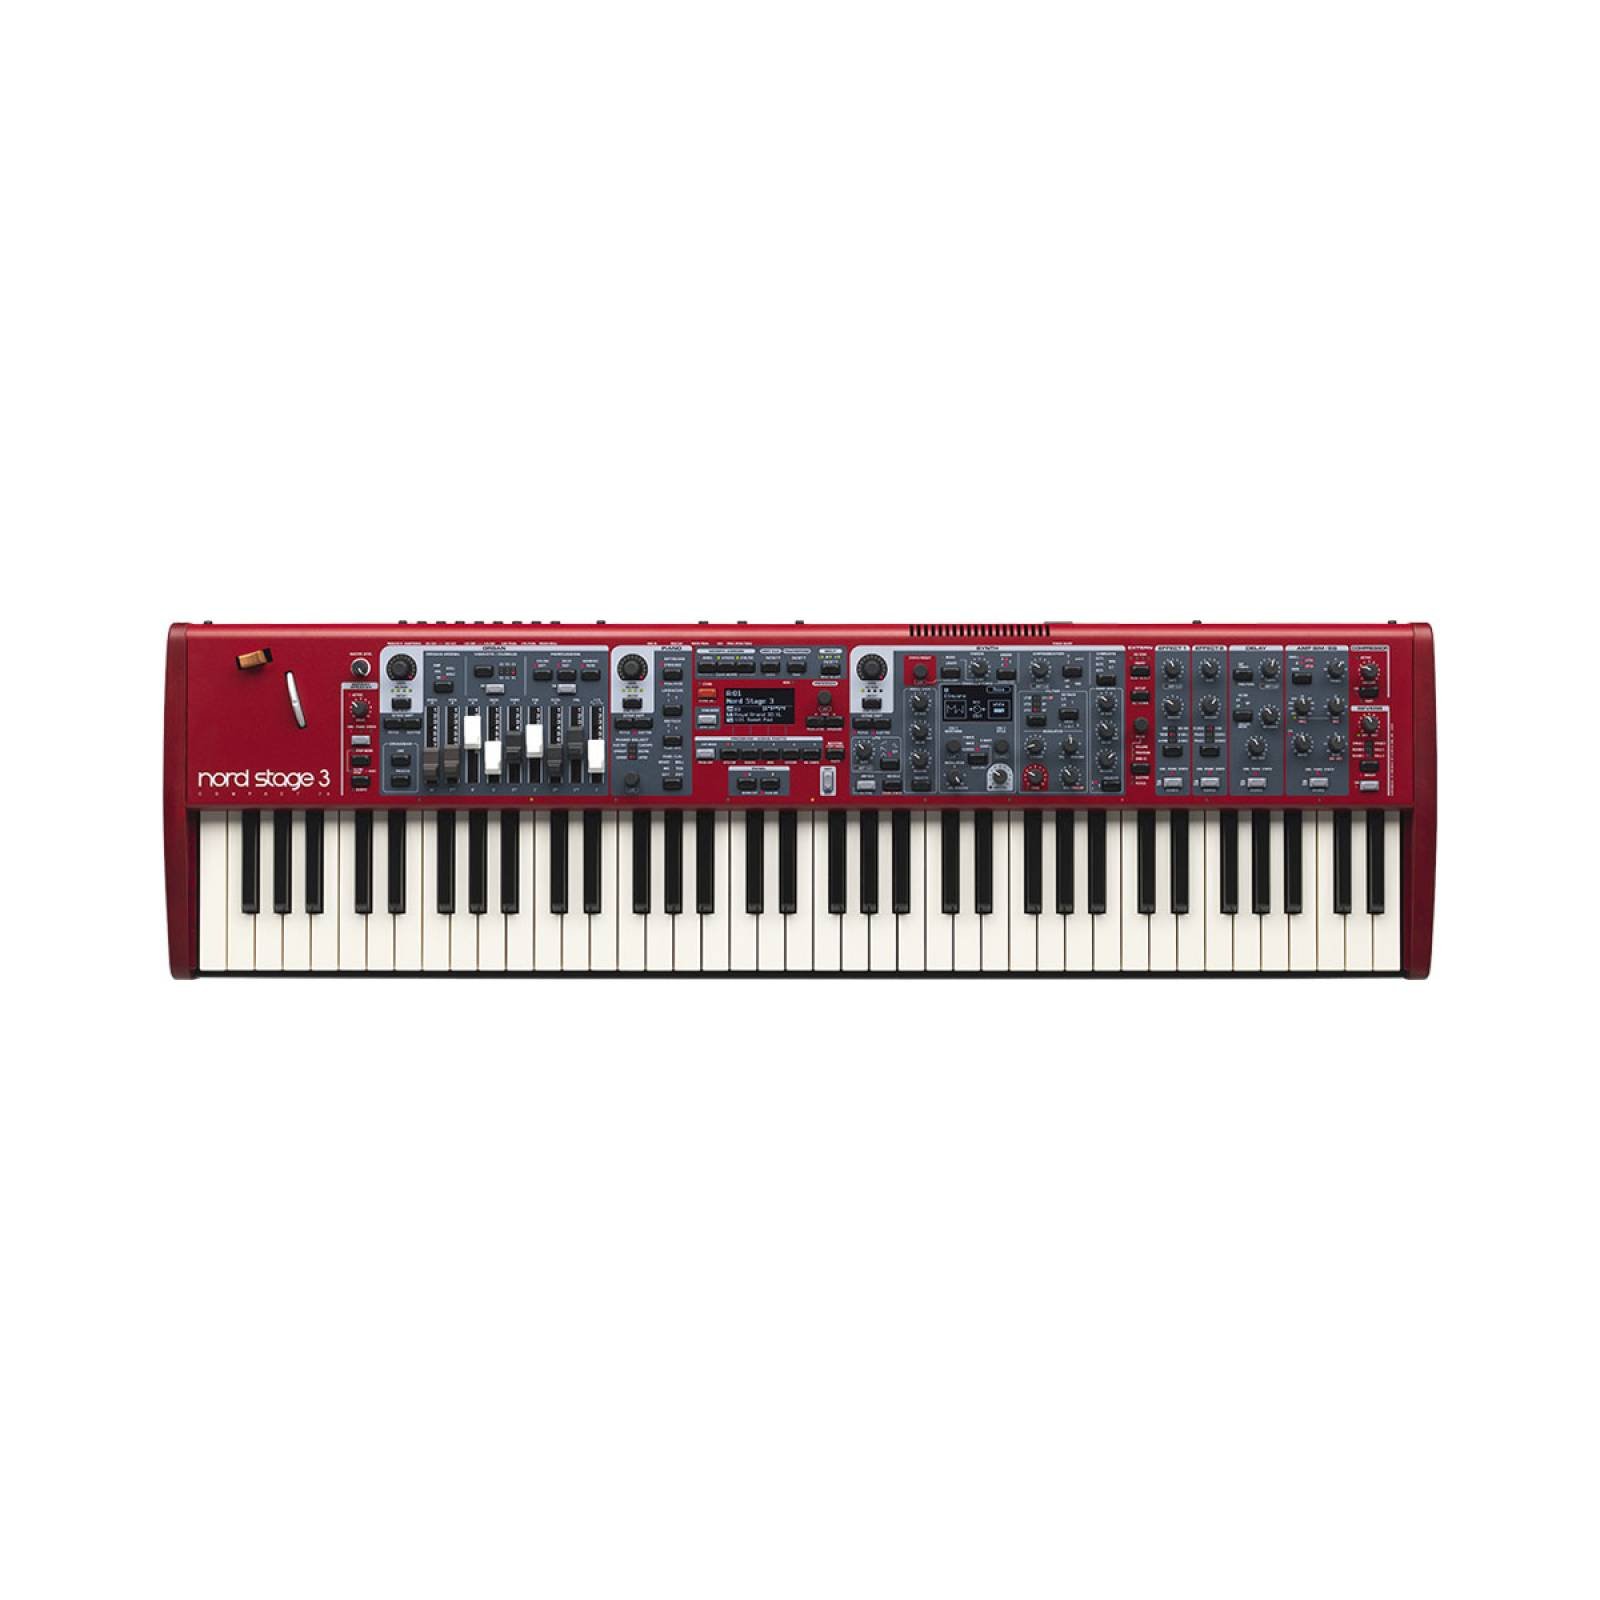 Piano órgano y sintetizador  NORD STAGE 3 COMPACT